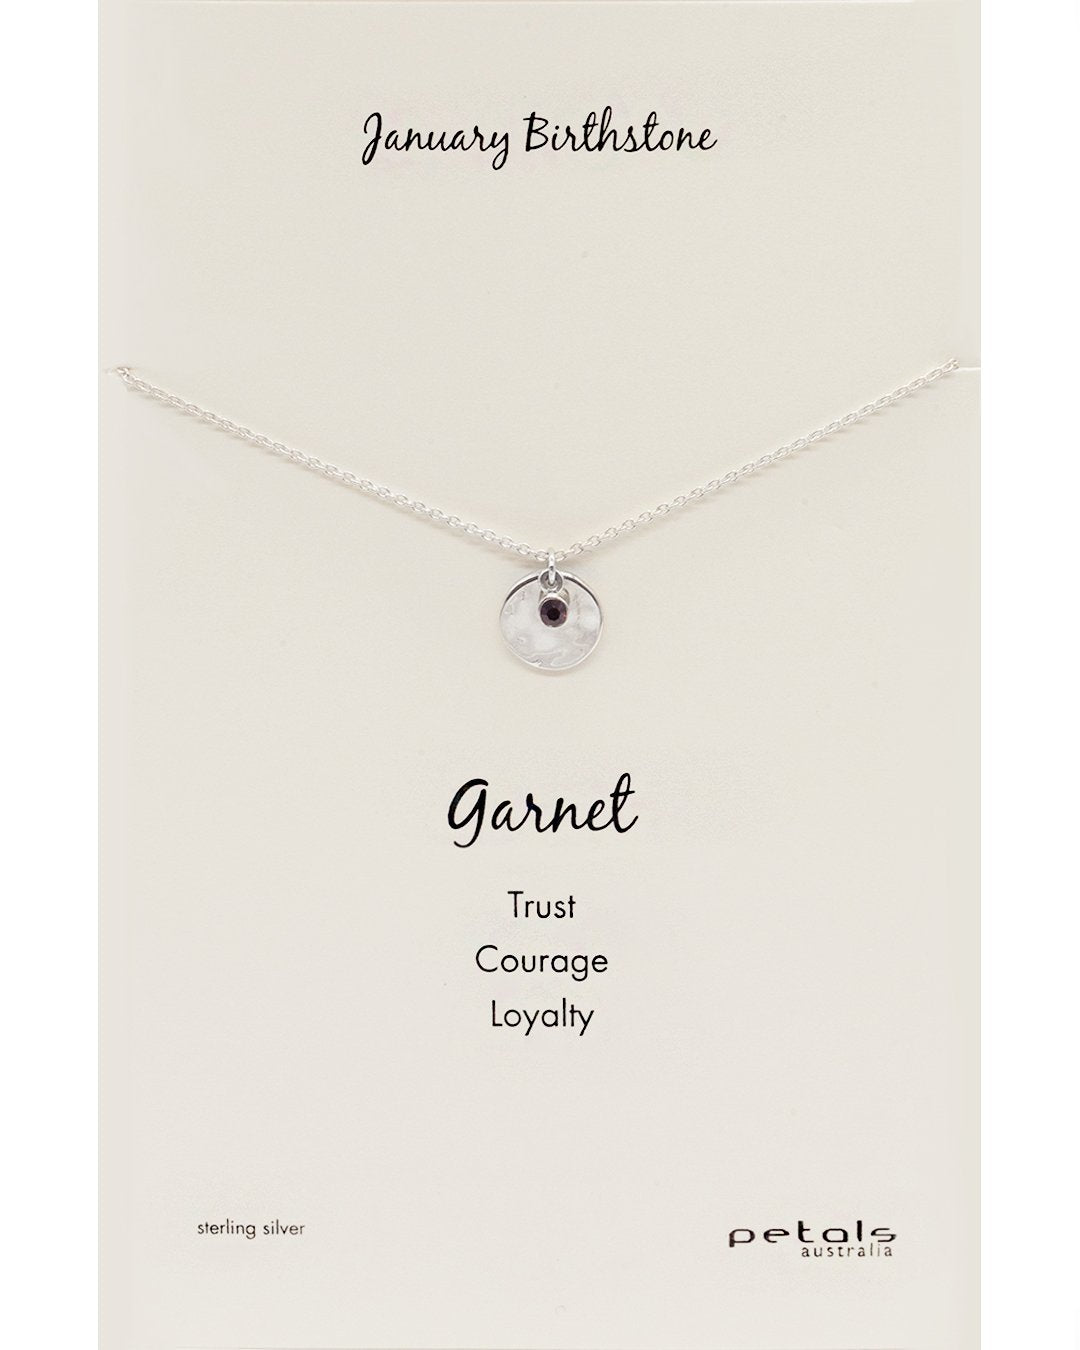 January Garnet Necklace